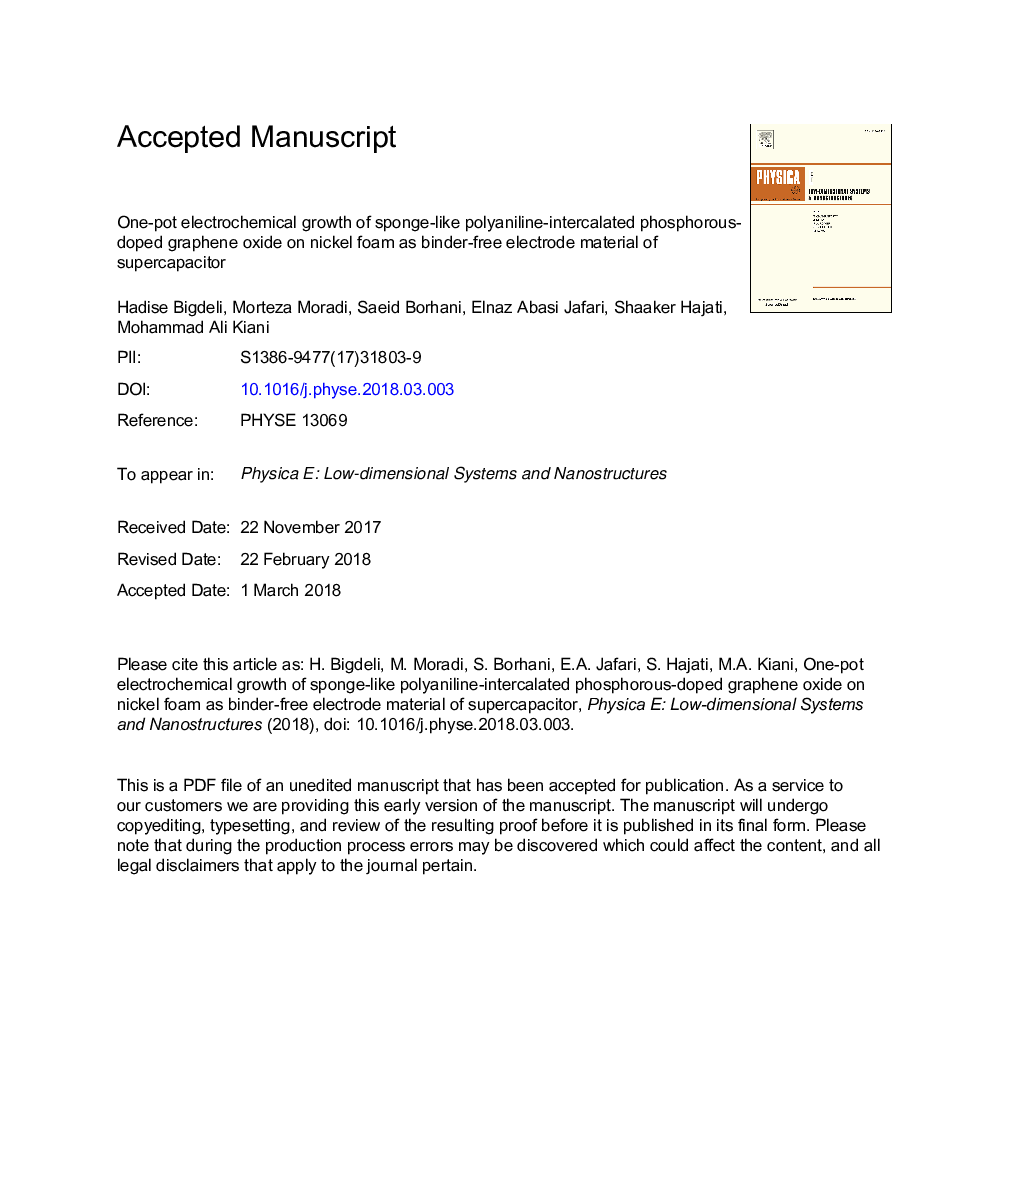 رشد الکتروشیمیایی یک بطری از اکسید گرافن فسفری پلی اتیلن مانند اسفنجی بر روی فوم نیکل به عنوان ماده الکترودهای بدون باند سوپراپاتوراتور 